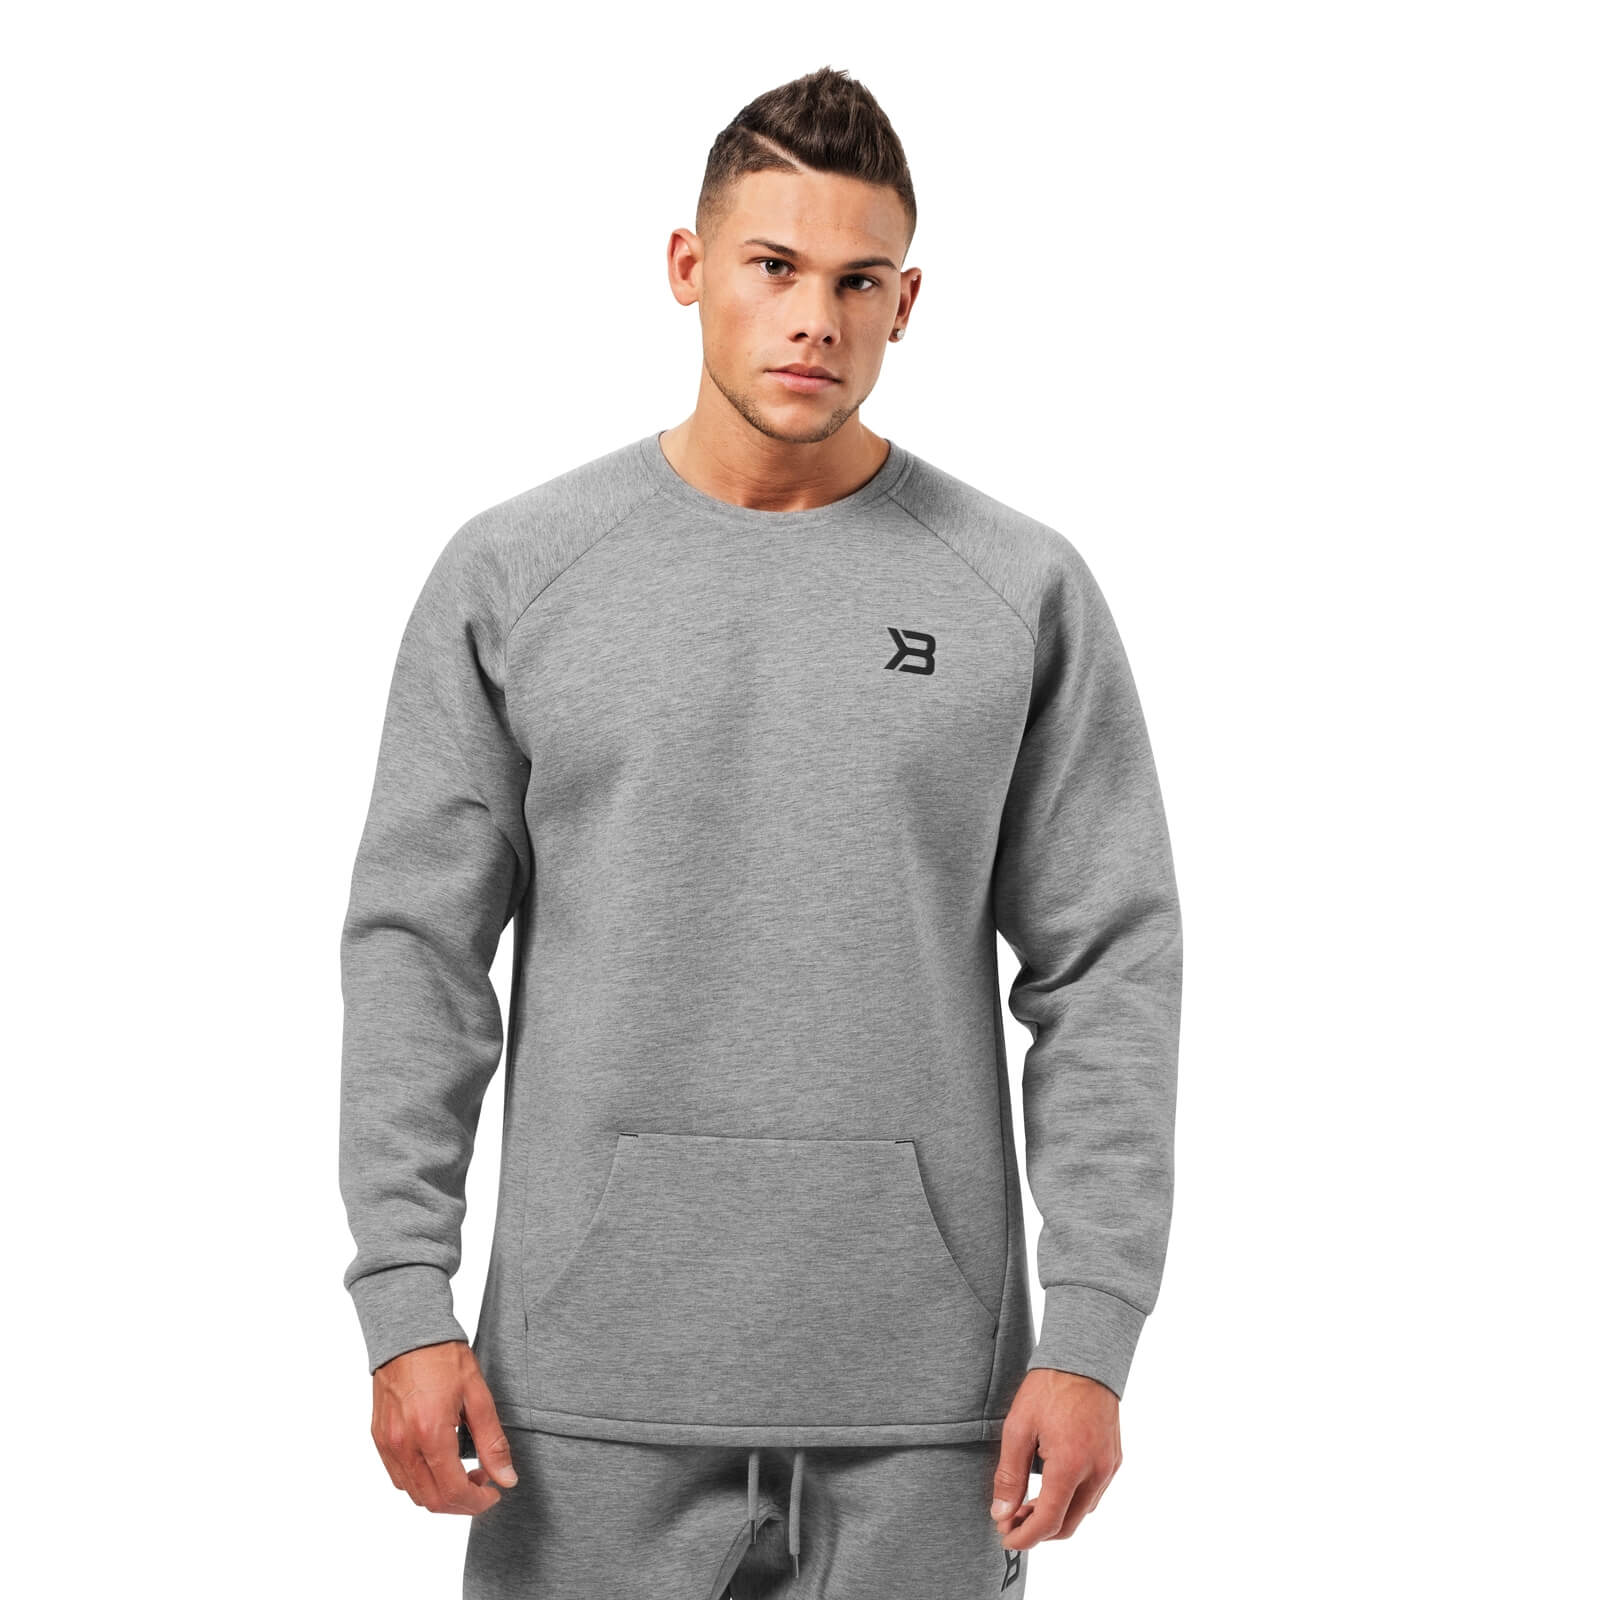 Sjekke Astor Sweater, greymelange, Better Bodies hos SportGymButikken.no